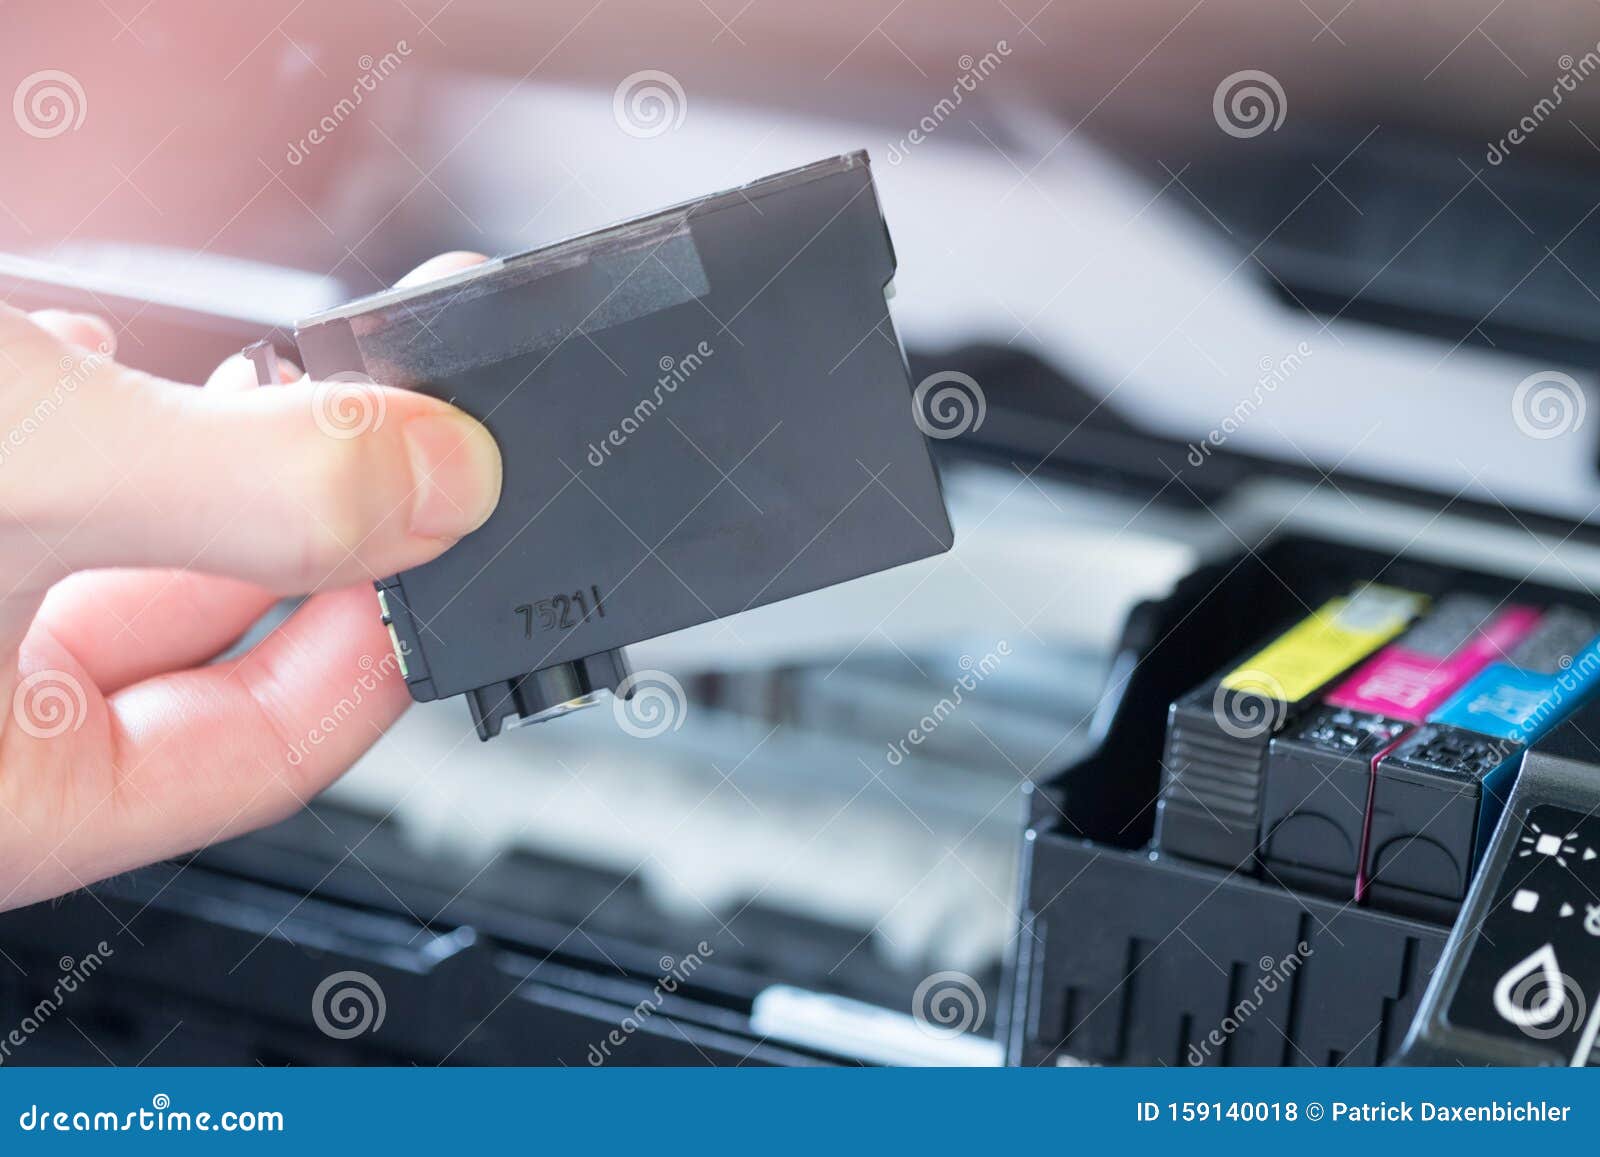 stoeprand Gietvorm grijs Cartridges Voor Printers Van Andere Leveranciers Vullen; Inkjet Stock Foto  - Image of vingers, blauw: 159140018